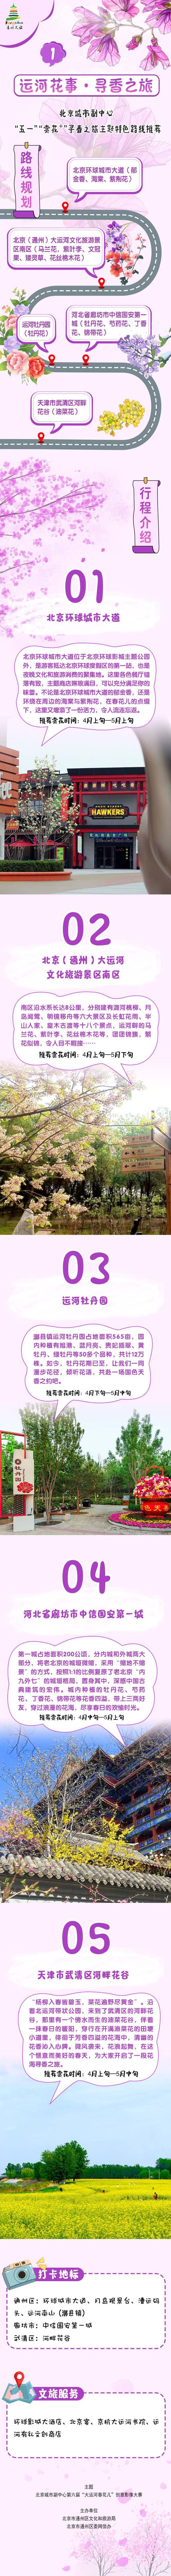 探寻花花世界，北京城市副中心“五一”推出三条“赏花+”寻春之旅特色打卡路线